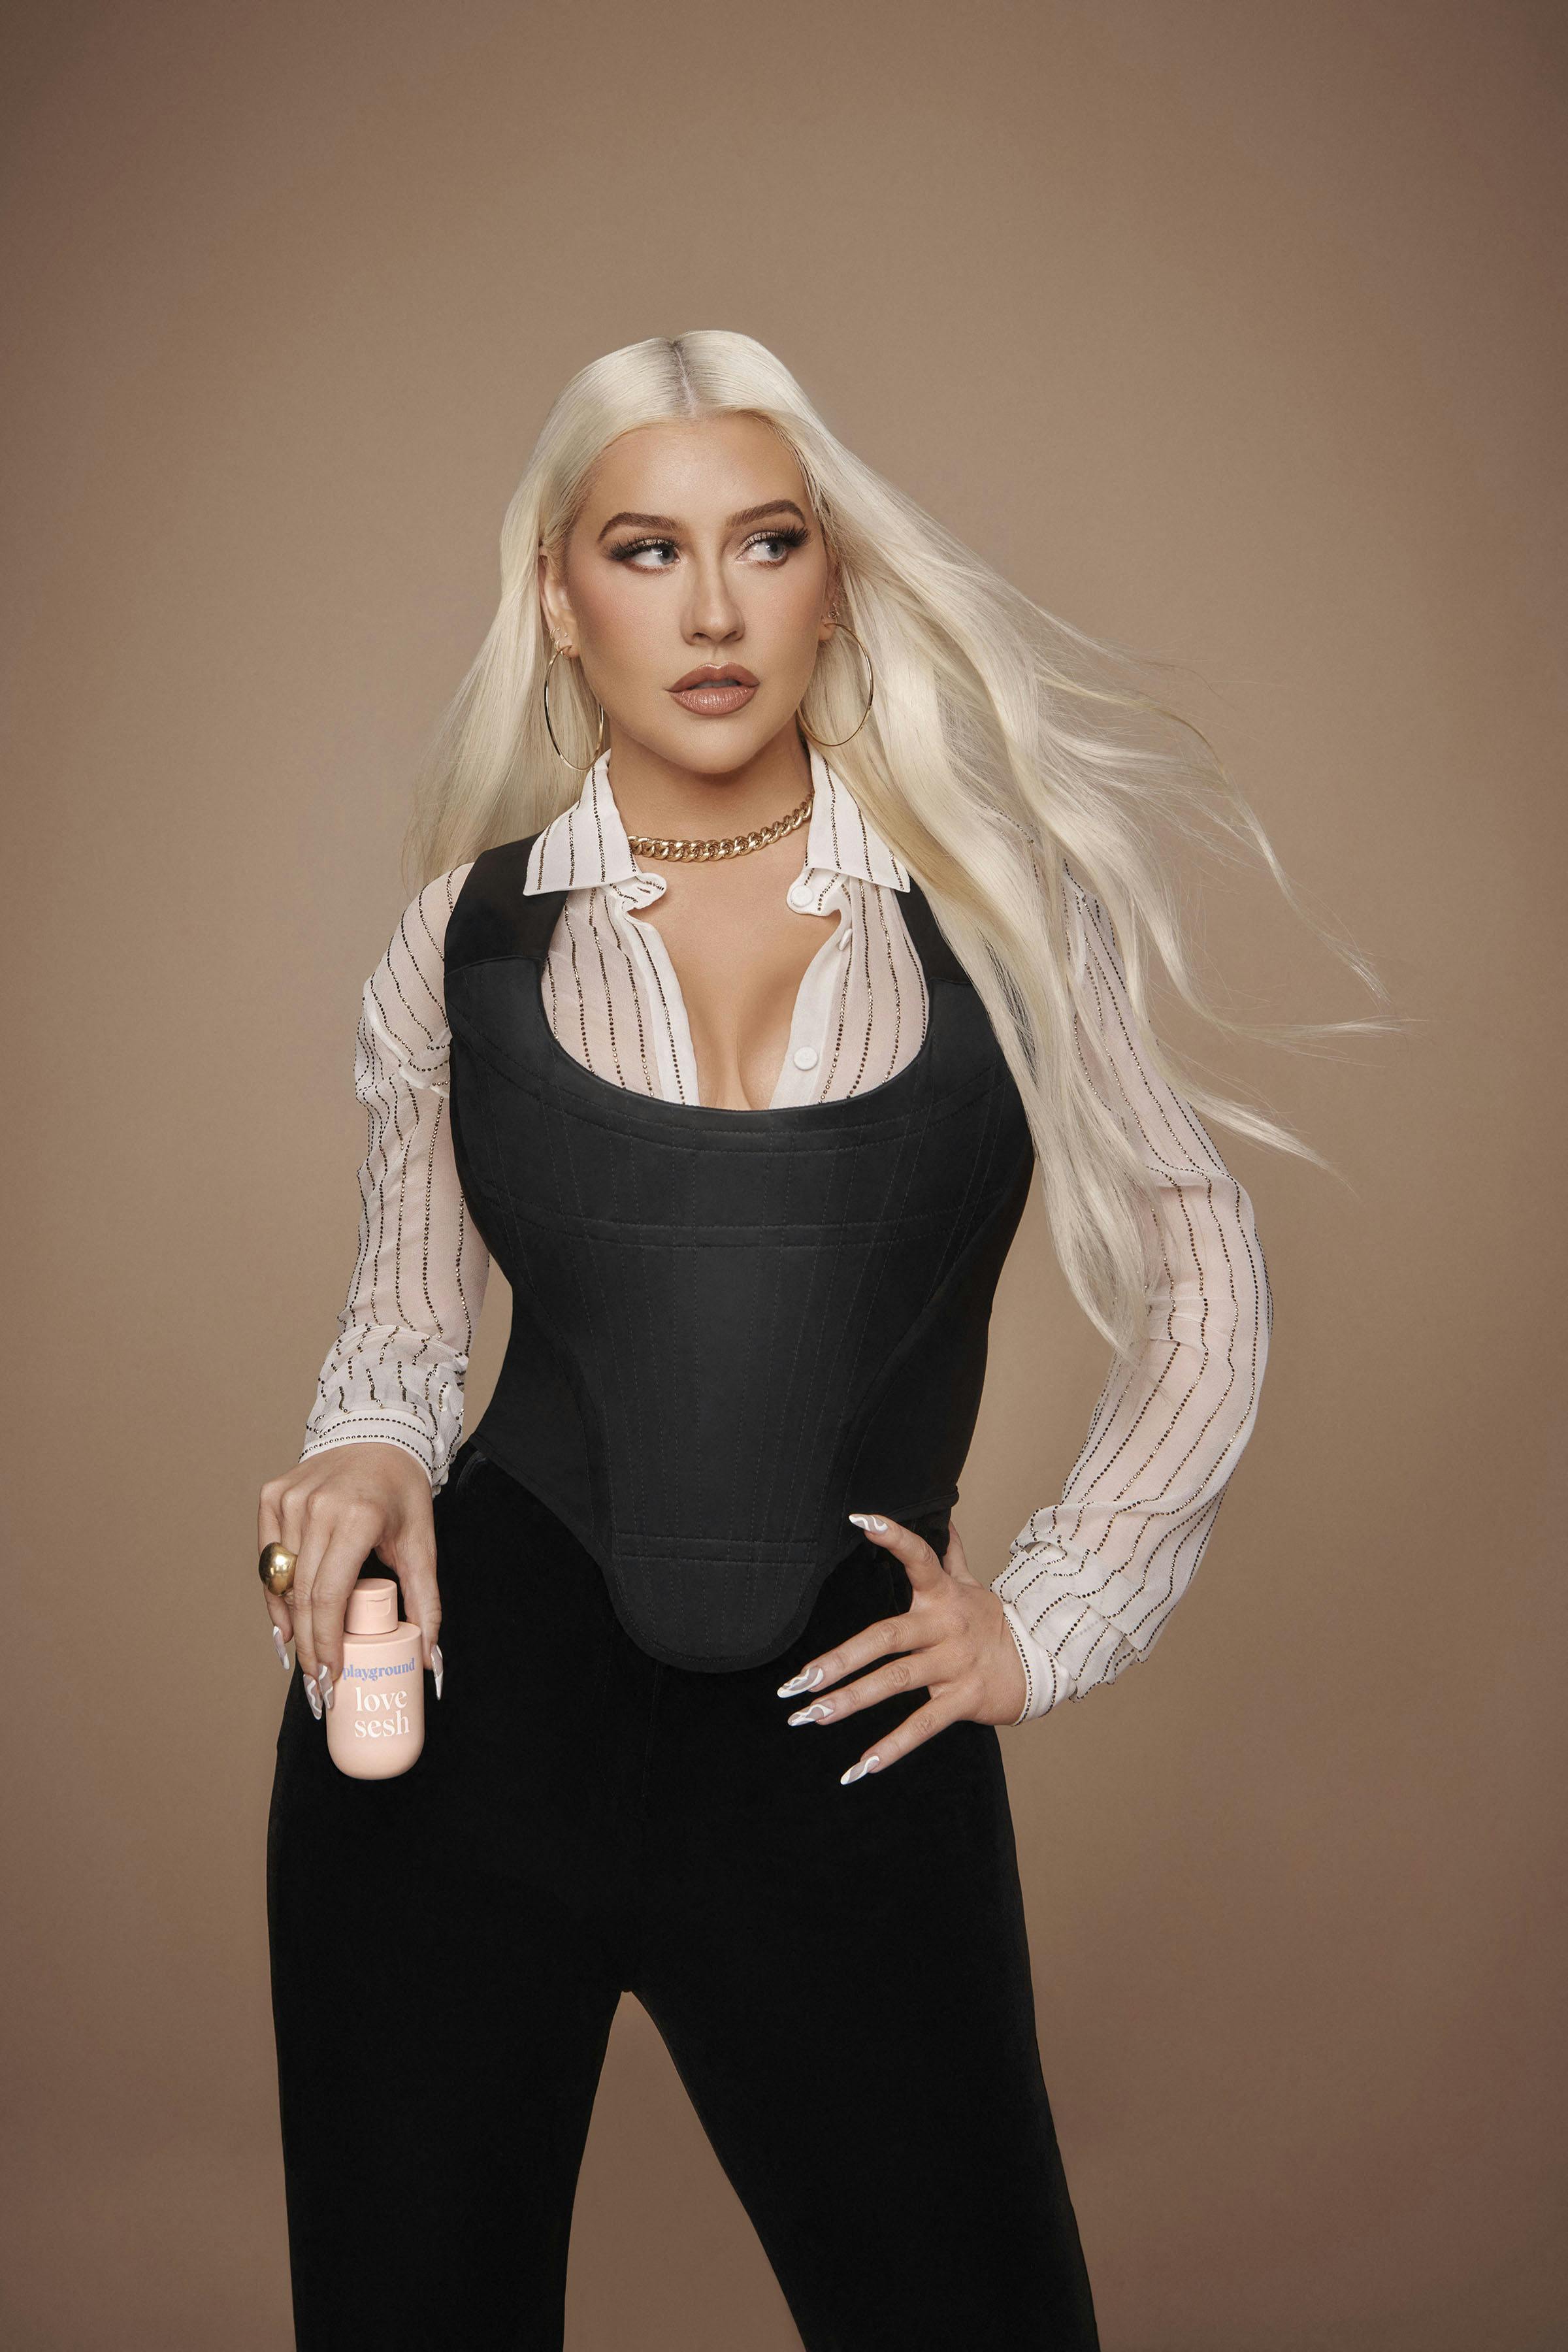 Christina Aguilera forsøger nu at booste salget af glidecreme med en annonce på sin Instagram-profil.